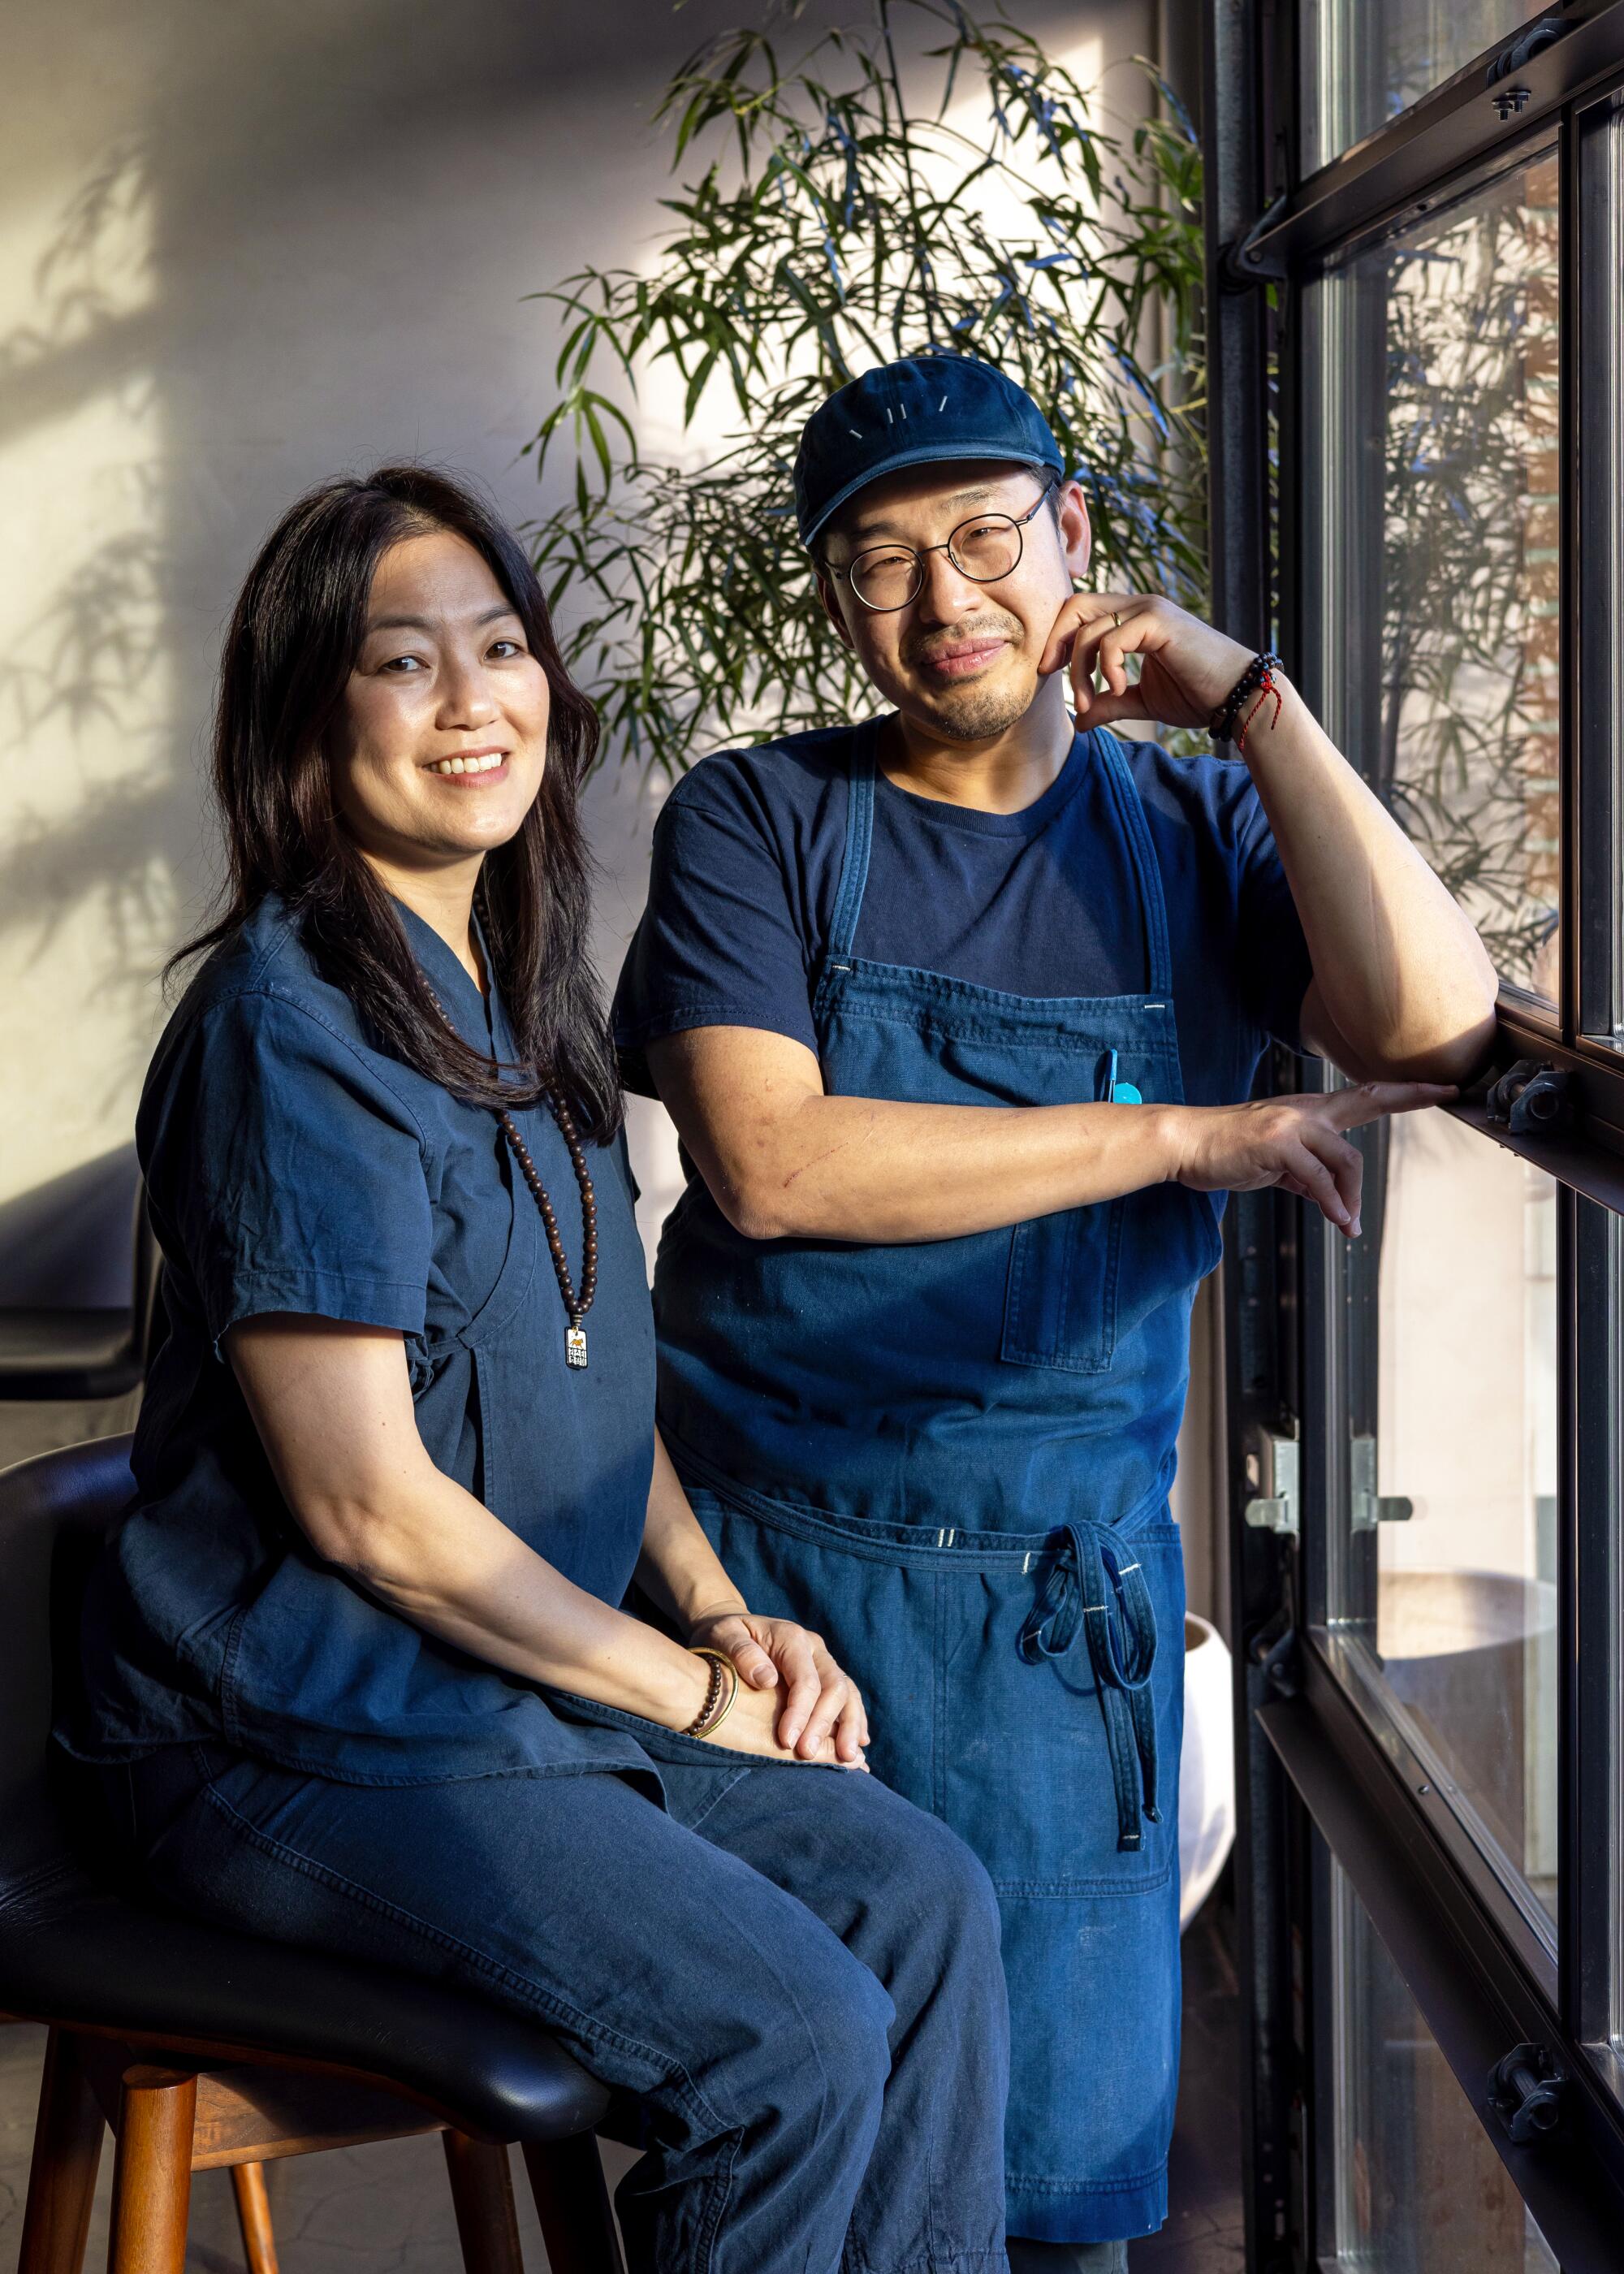 Baroo-Besitzer-Koch Kwang Uh (rechts) und Mina Park, ein Gastronomen-Ehepaar, posieren für ein Porträt.